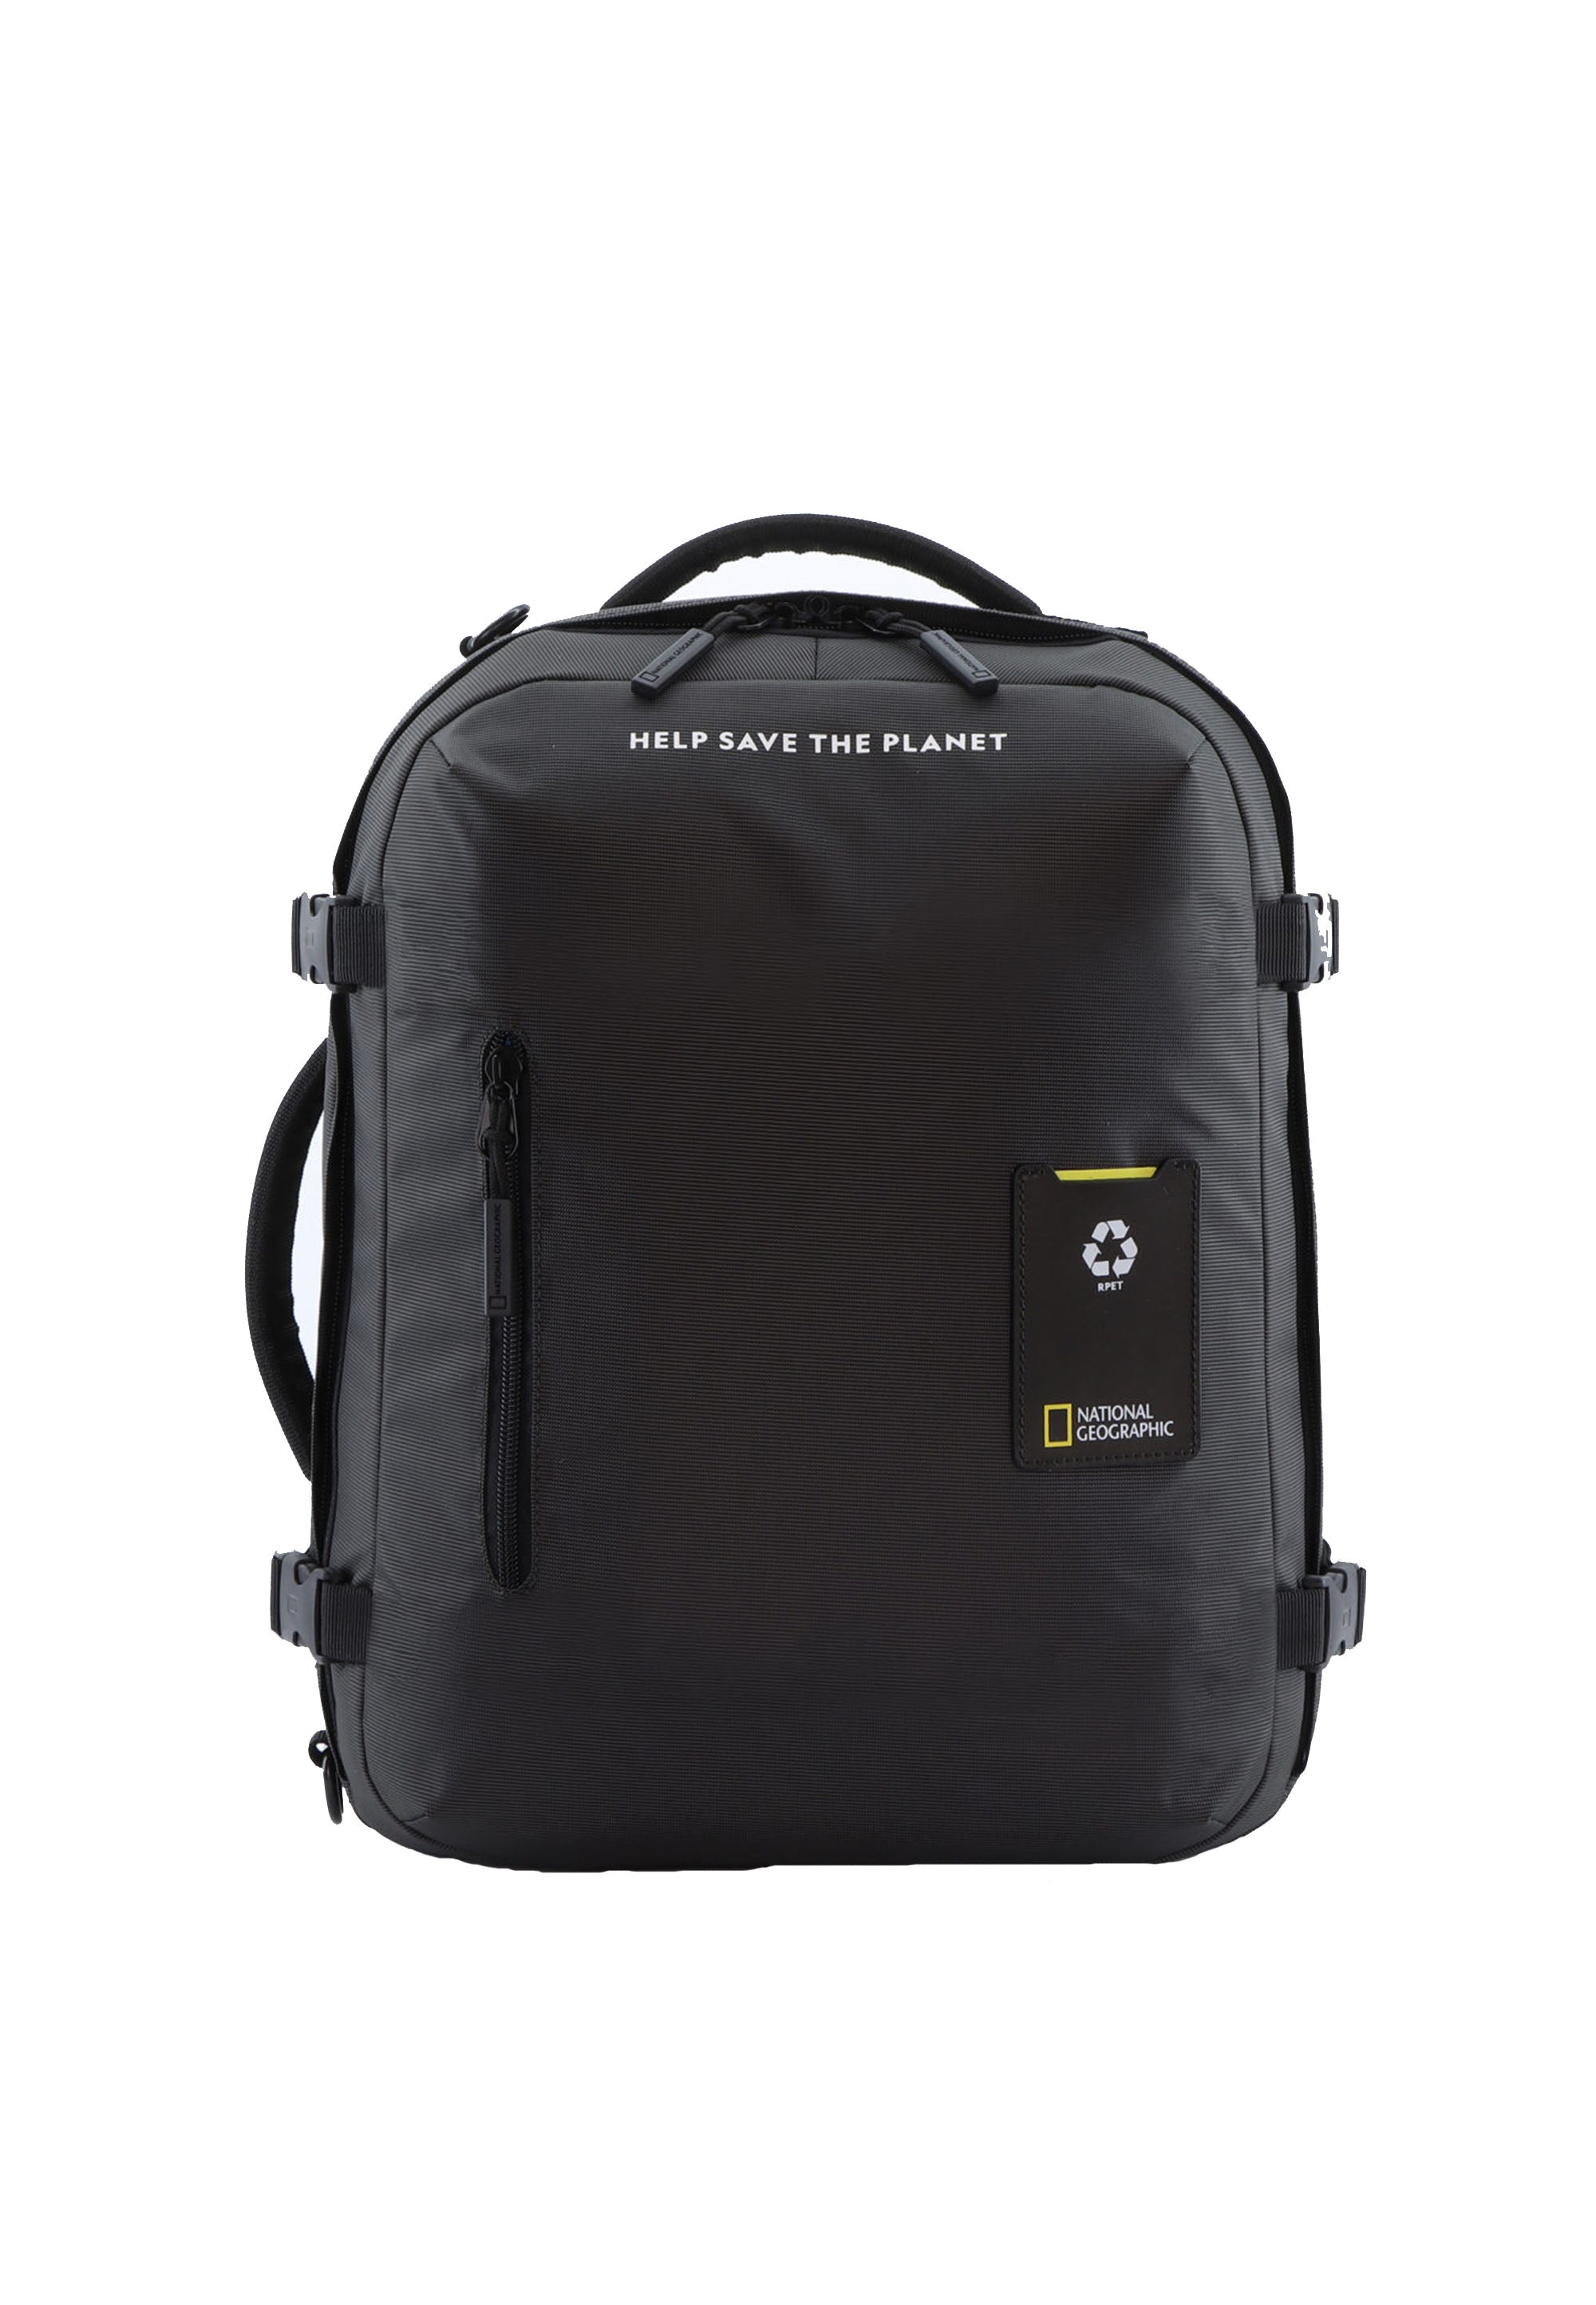 Rucksack Aktentasche Laptoptasche der Nat Geo Ocean Serie in schwarz RPET N20906